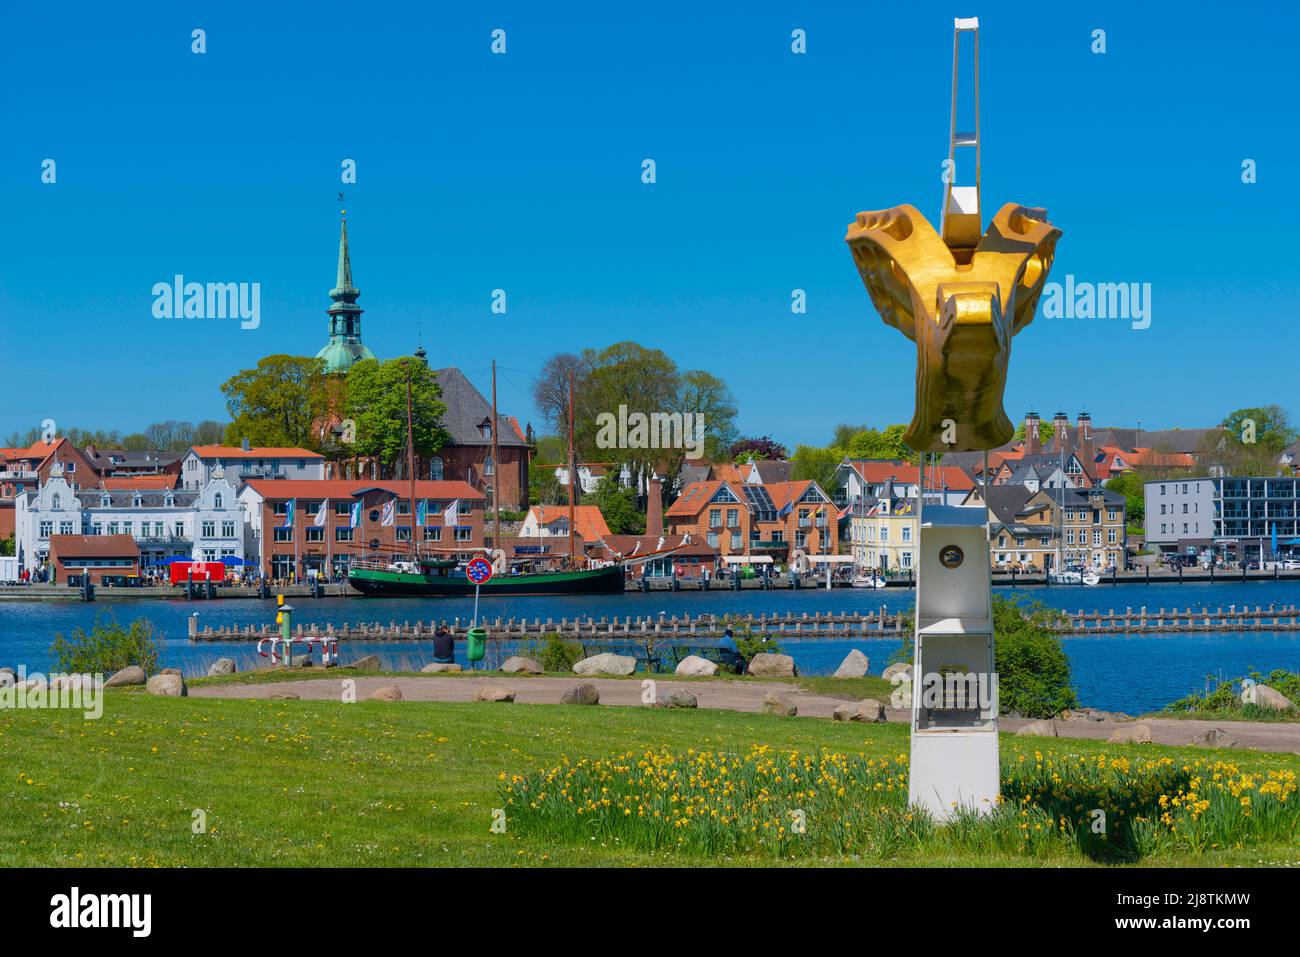 Petite ville de Kappeln sur le fjord Schlei, vue panoramique sur le fjord, tête de figure du grand navire 'Gorch Fock', Schleswig-Holstein, Allemagne, Europe Banque D'Images